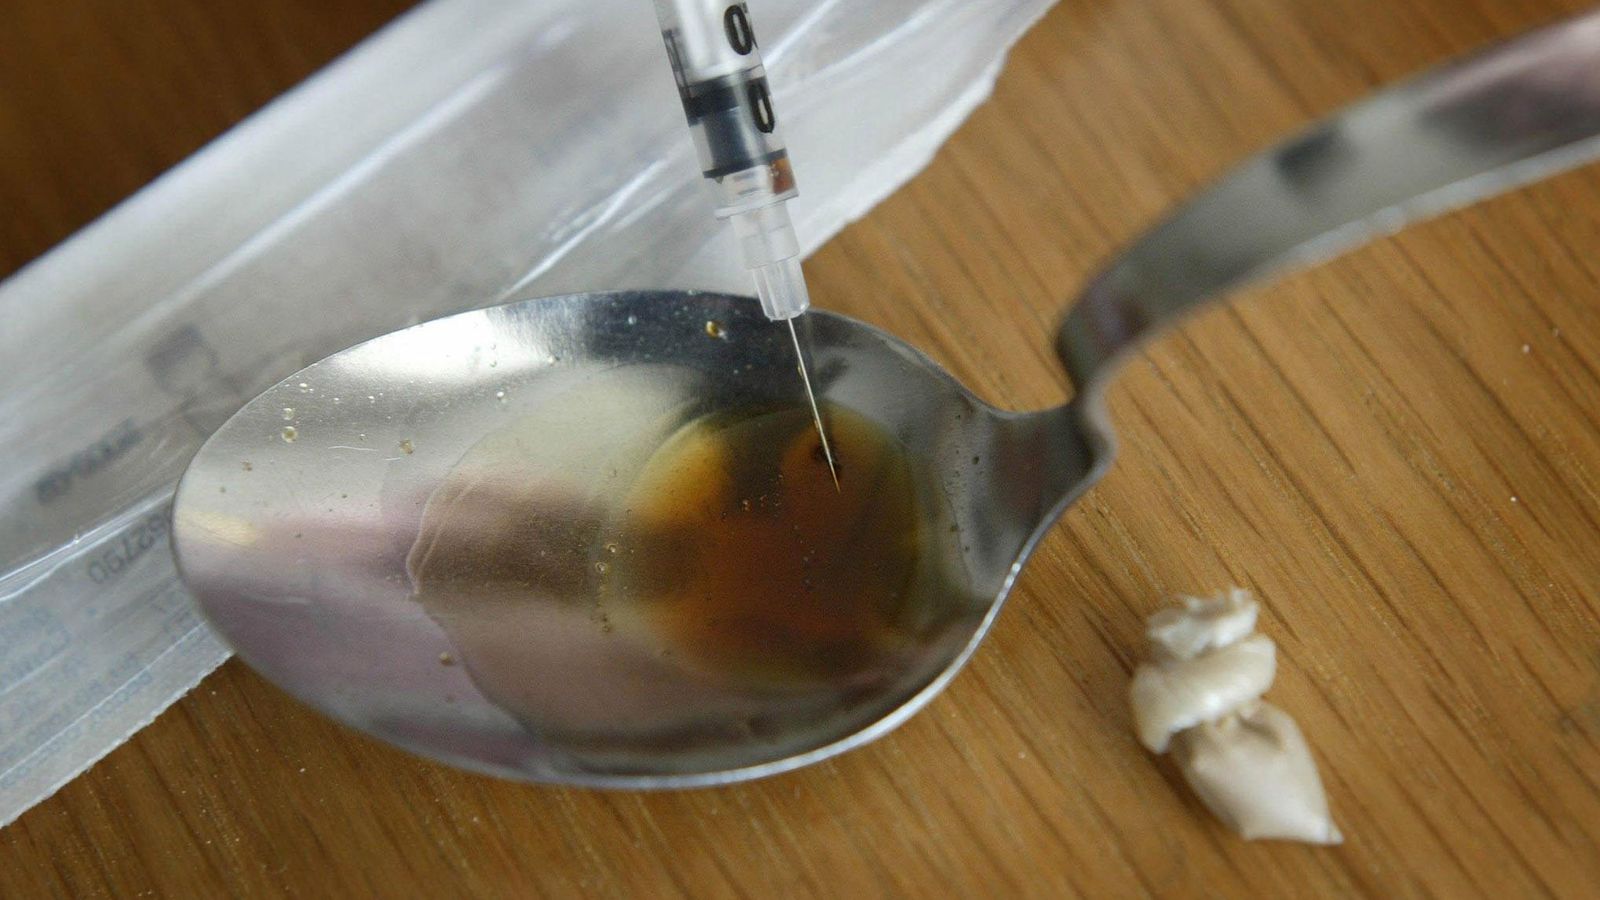 Des lieux sûrs pour la consommation de drogue devraient être testés au Royaume-Uni, recommandent les députés |  Actualités politiques